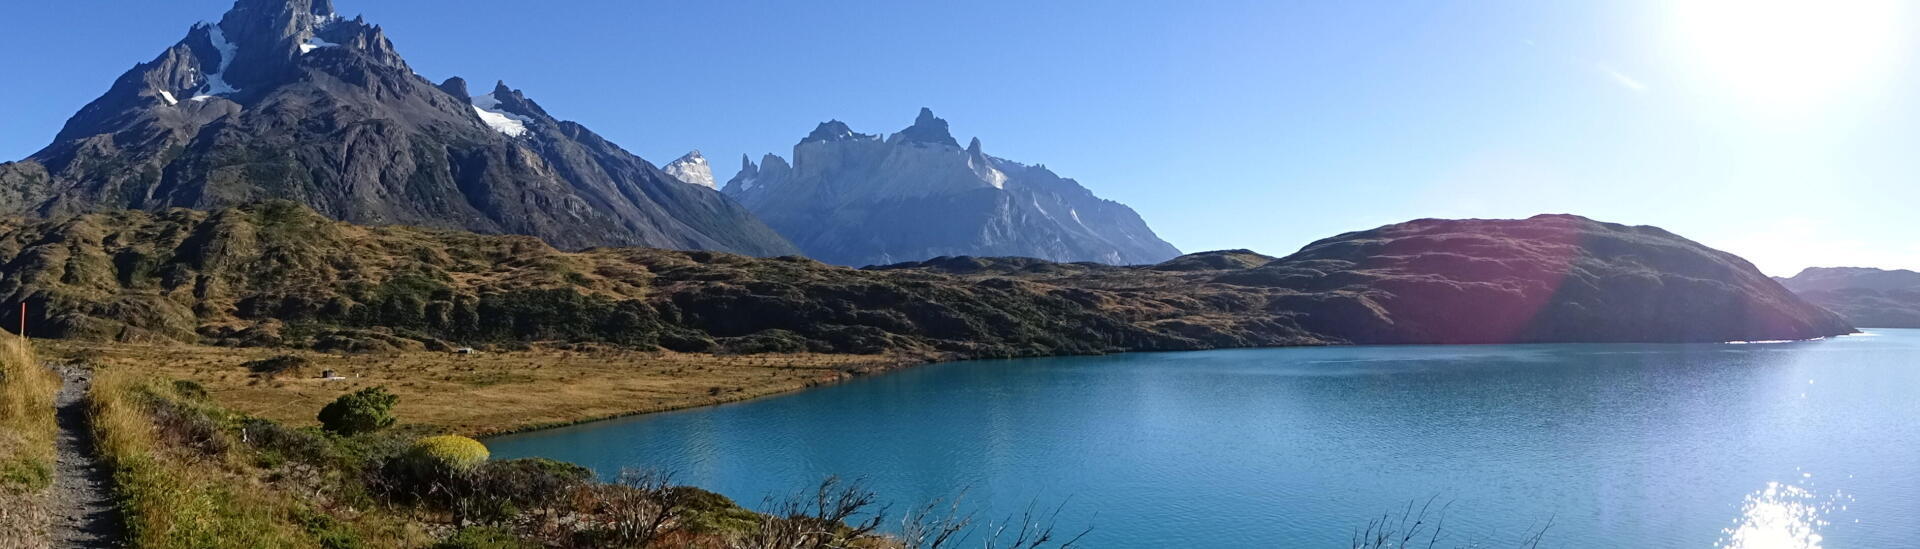 10 jours de trek dans le parc national de Torres del Paine en Patagonie Terre de feu